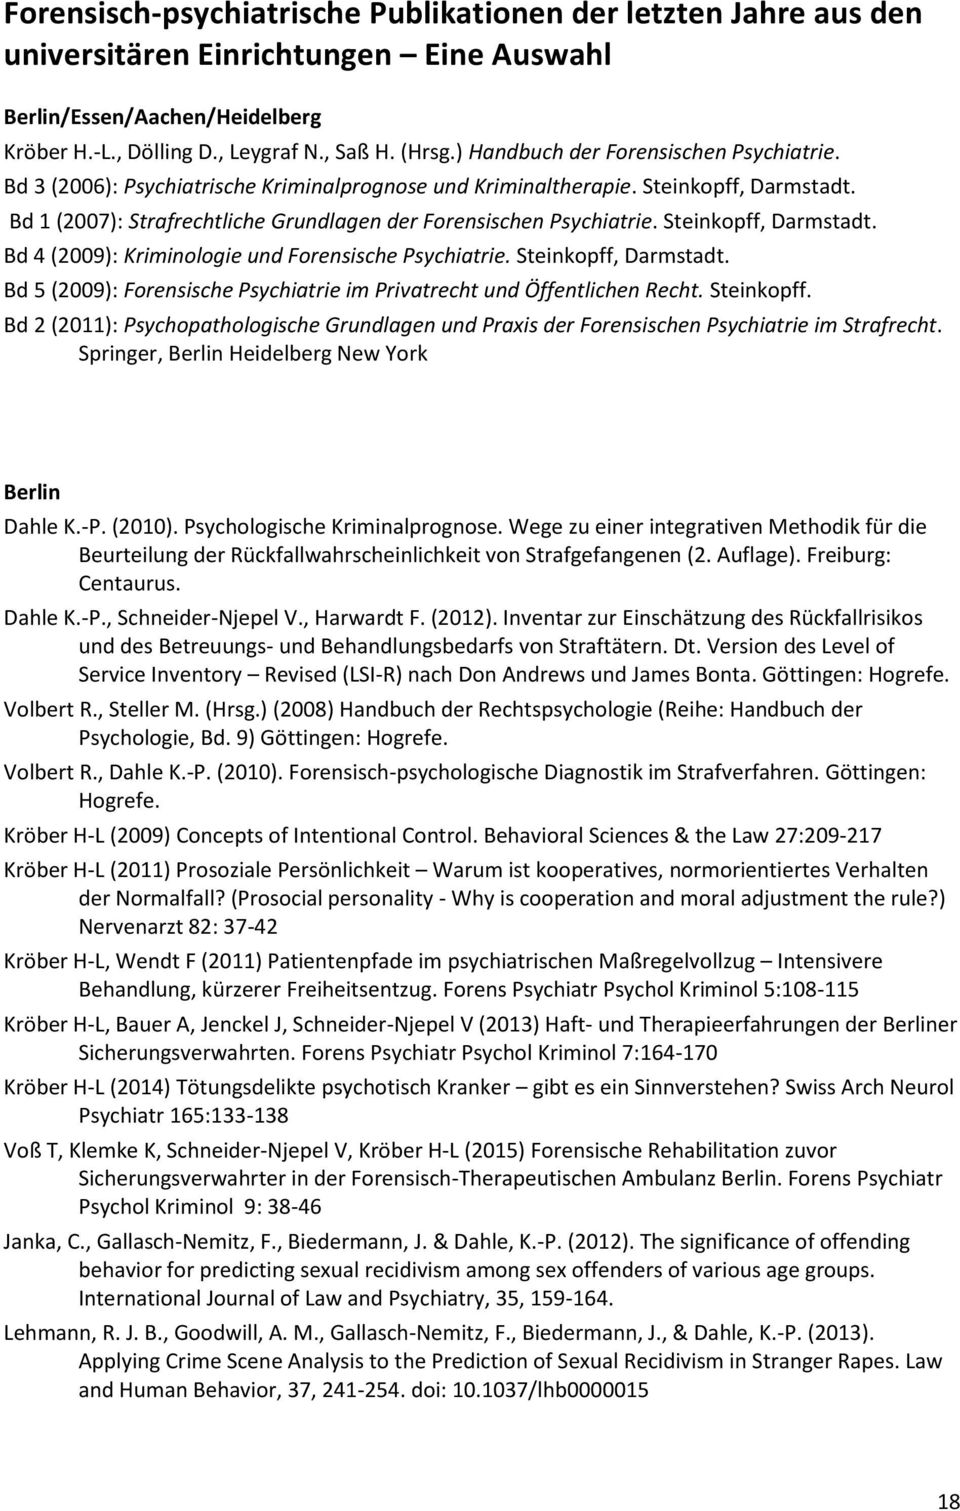 Steinkopff, Darmstadt. Bd 4 (2009): Kriminologie und Forensische Psychiatrie. Steinkopff, Darmstadt. Bd 5 (2009): Forensische Psychiatrie im Privatrecht und Öffentlichen Recht. Steinkopff. Bd 2 (2011): Psychopathologische Grundlagen und Praxis der Forensischen Psychiatrie im Strafrecht.